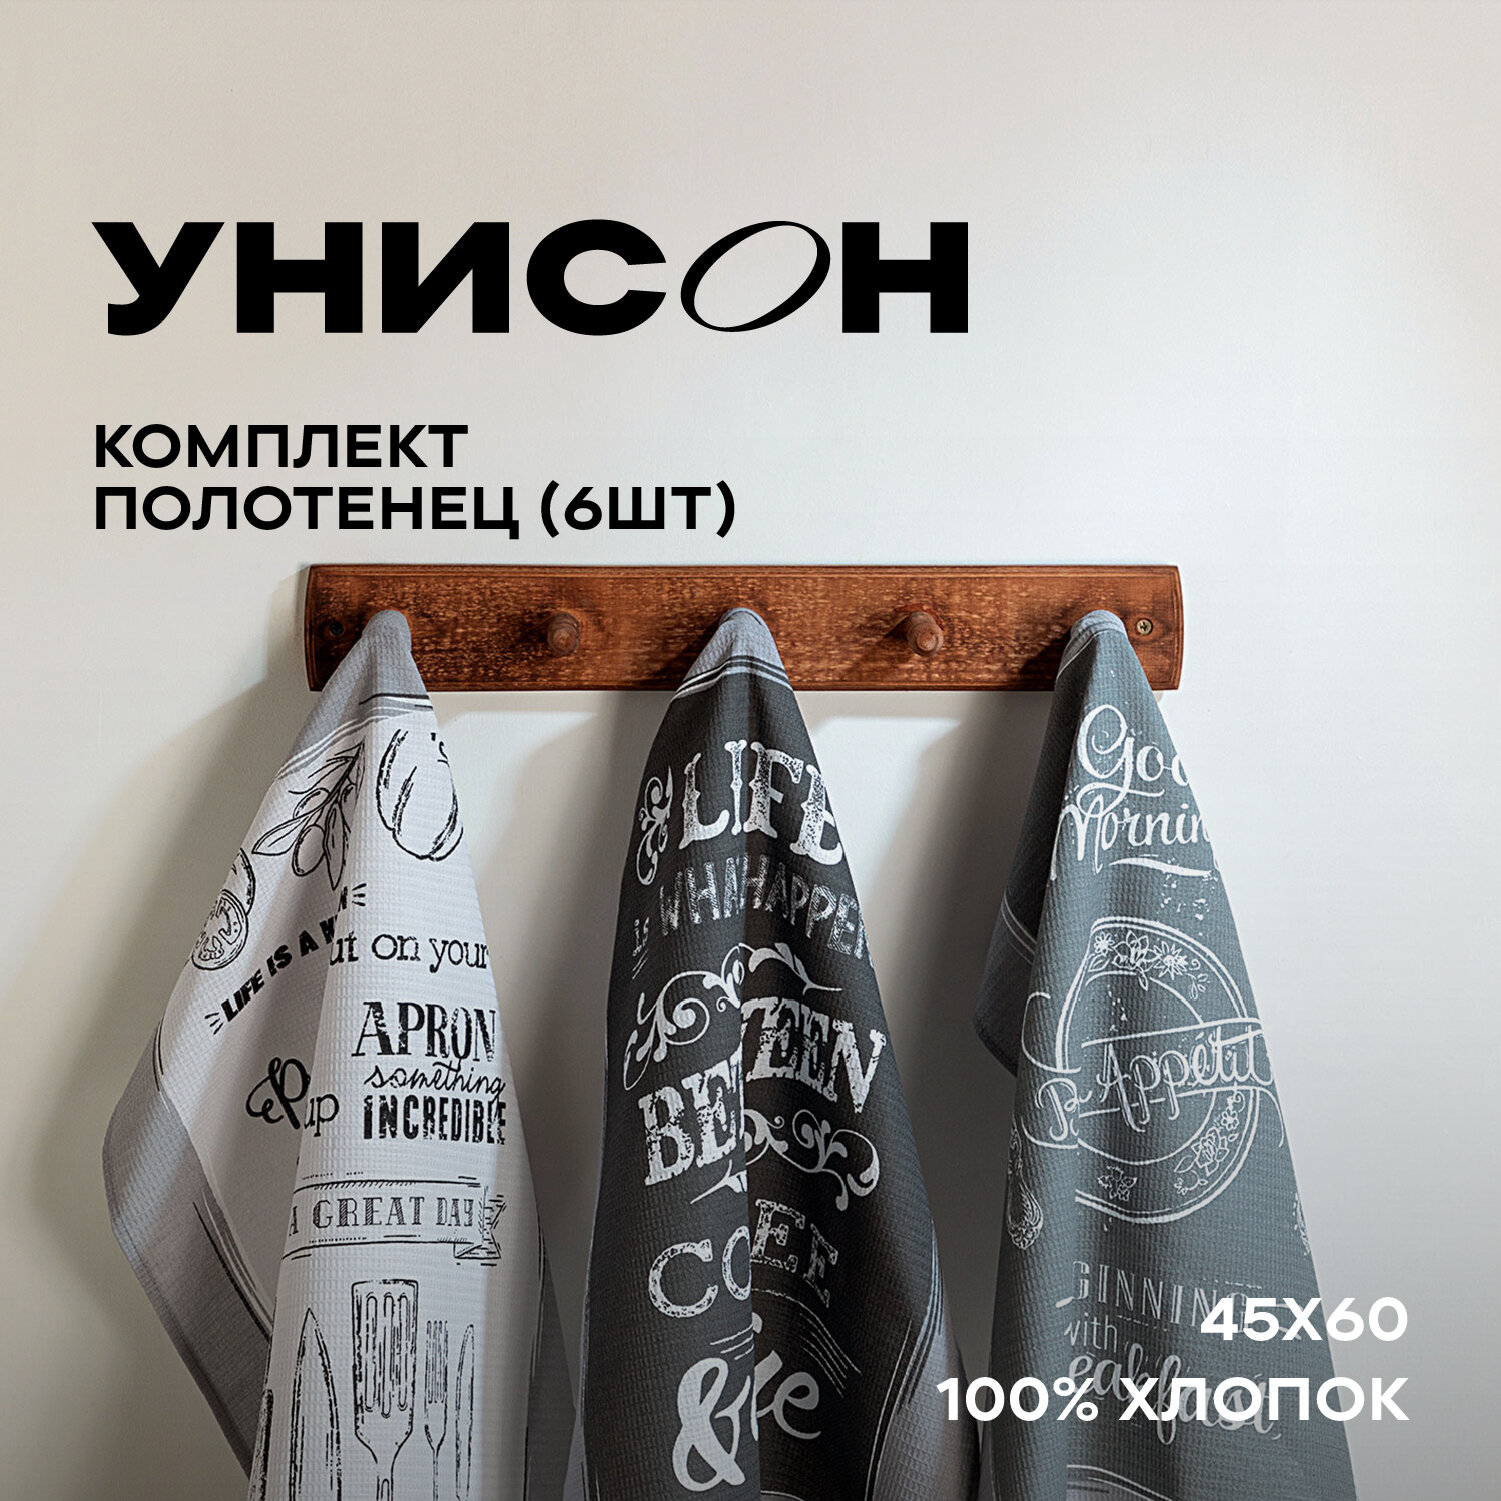 Комплект вафельных полотенец 45х60 (6 шт.) "Унисон" рис 33069-1 Loft Cafe